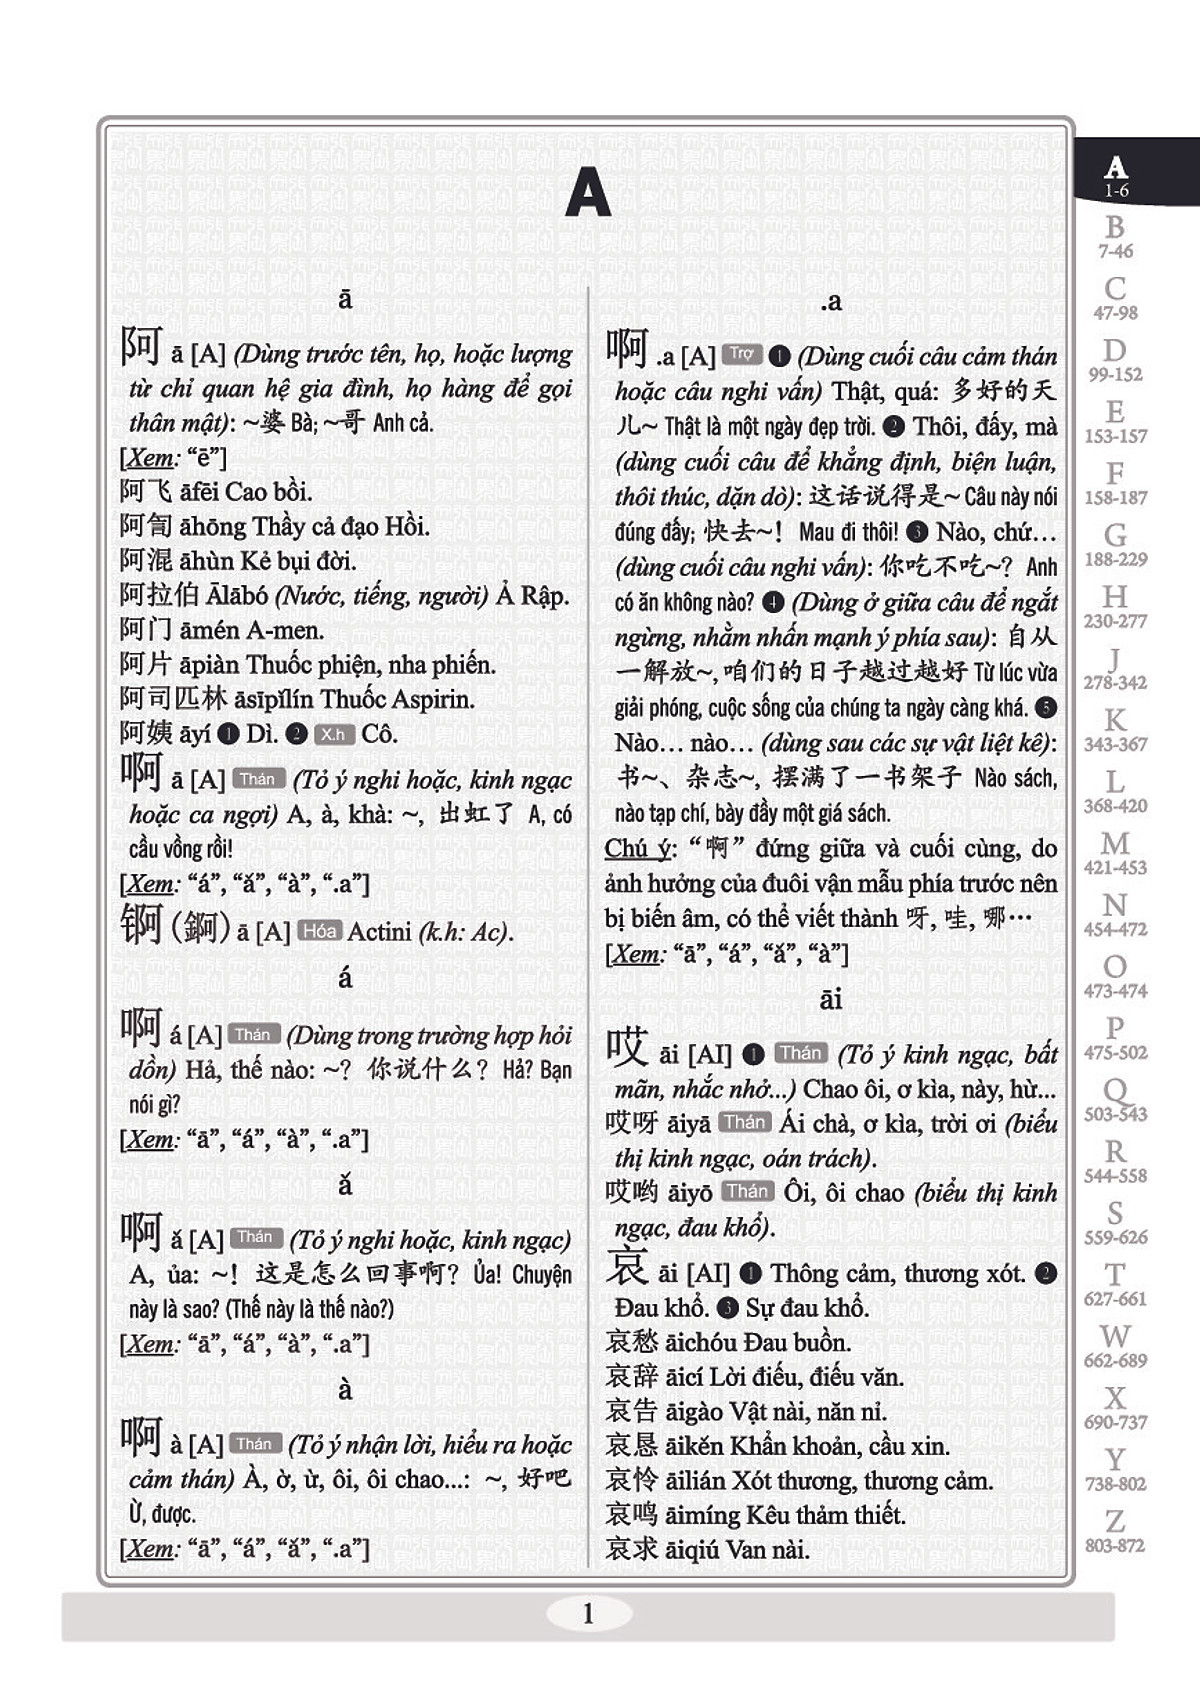 Combo 2 sách Từ điển 2 trong 1 Việt Hán Hán Việt hiện đại 1512 trang bìa cứng khổ lớn ( Hoa Việt 872 trang - Việt Hoa 640 trang)+ Phân tích đáp án các bài luyện dịch Tiếng Trung +DVD tài liệu